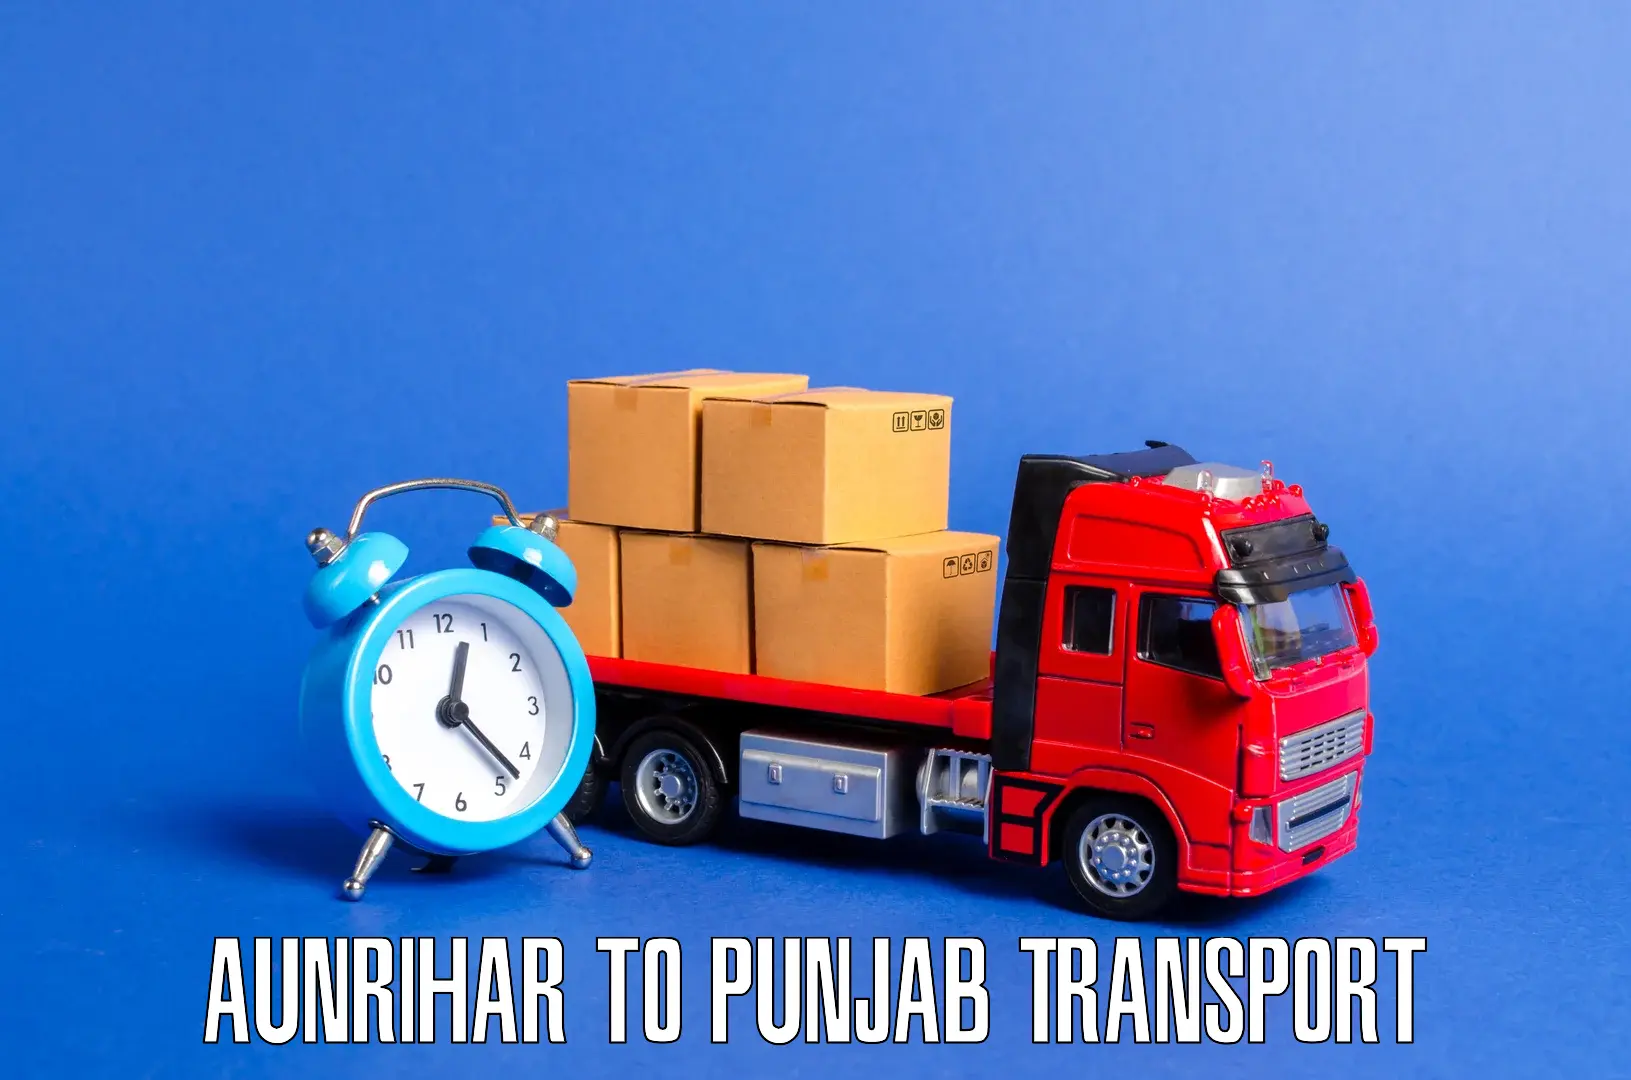 Furniture transport service Aunrihar to Jalalabad